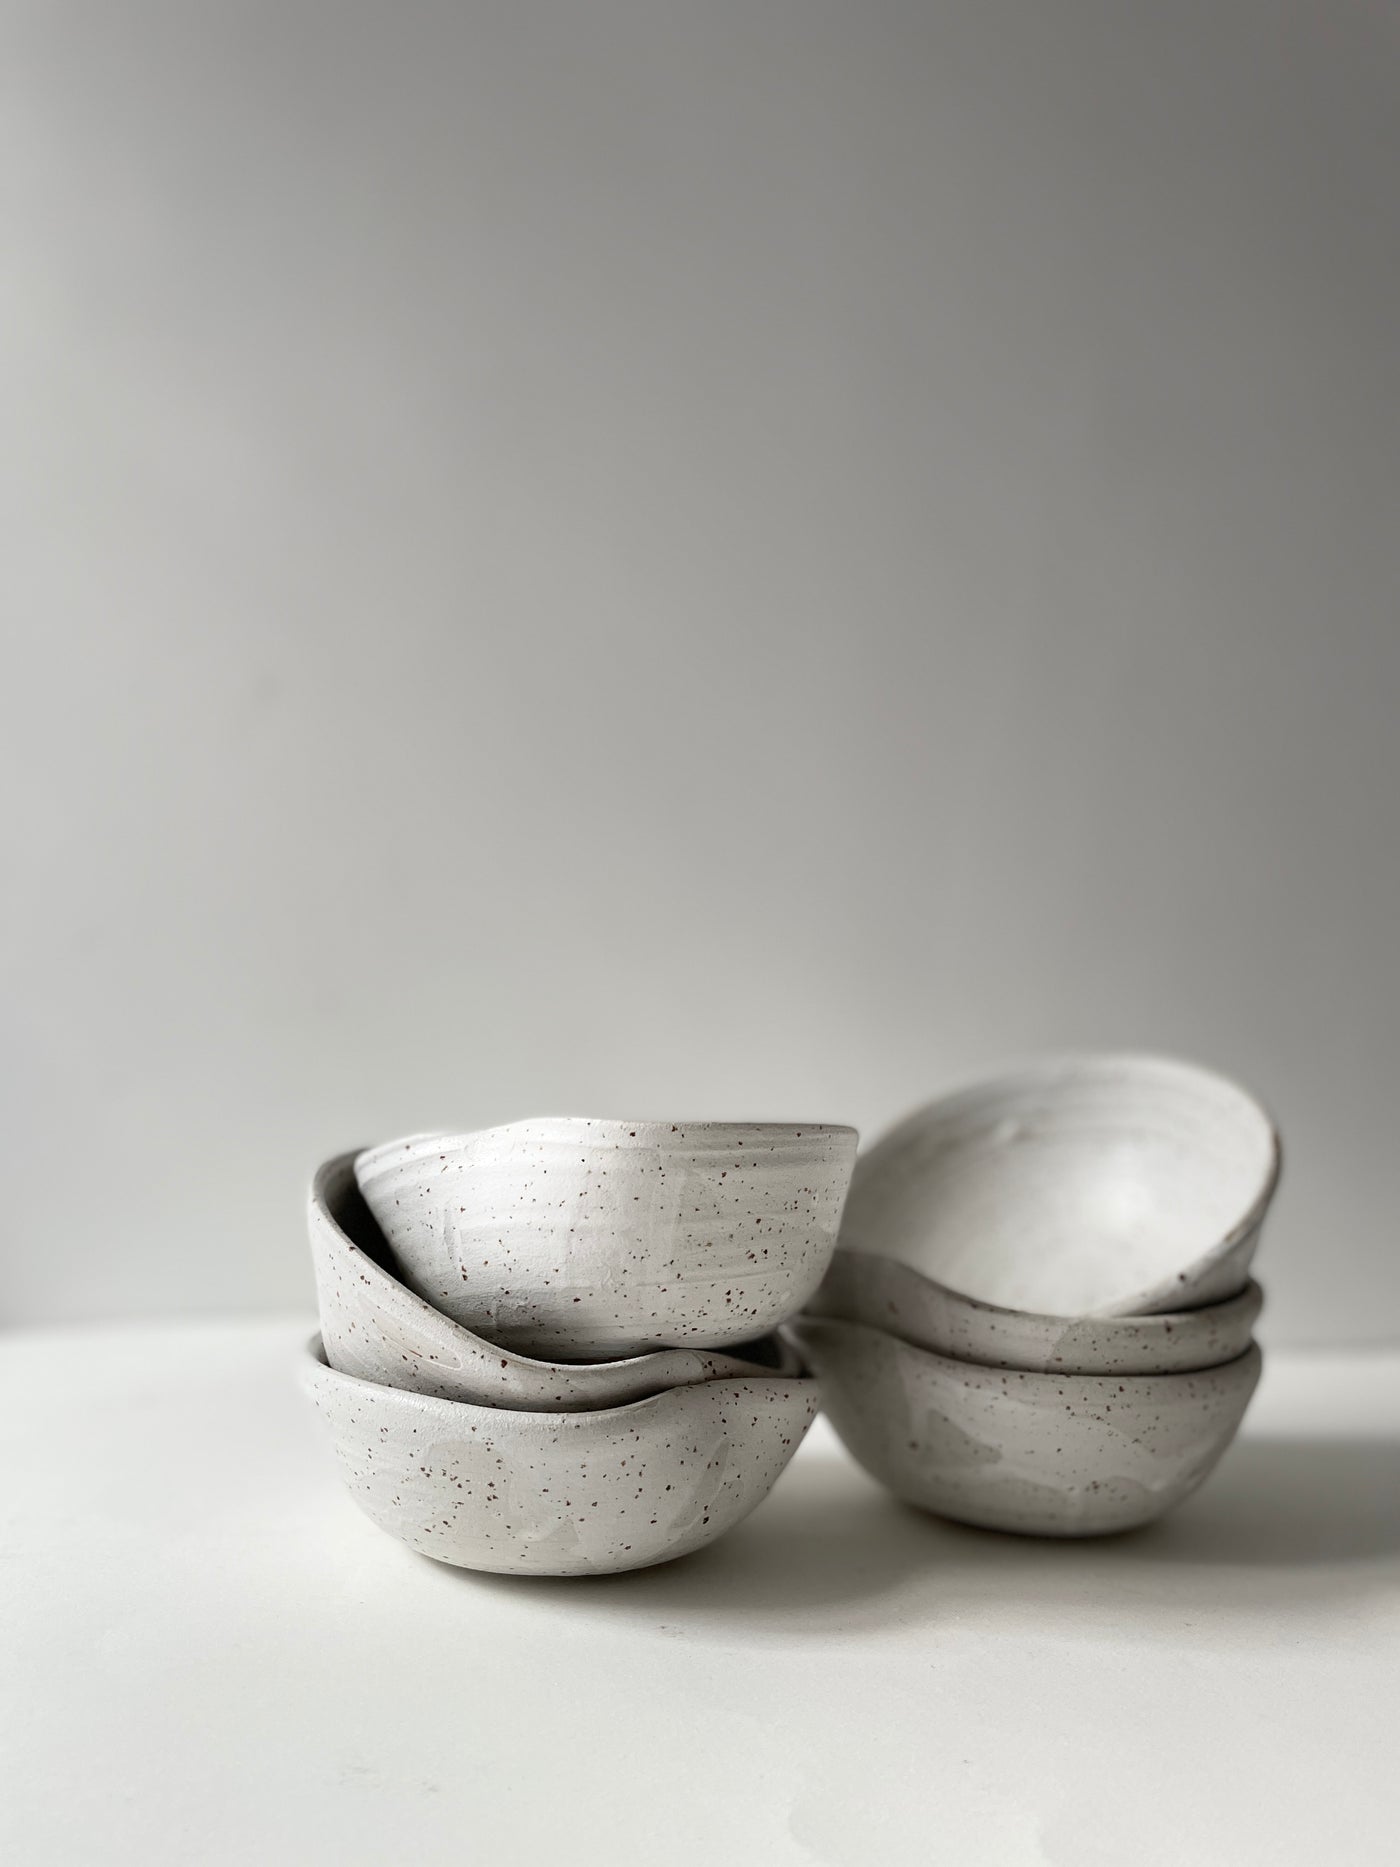 Bowl by Silene Fry Atelier